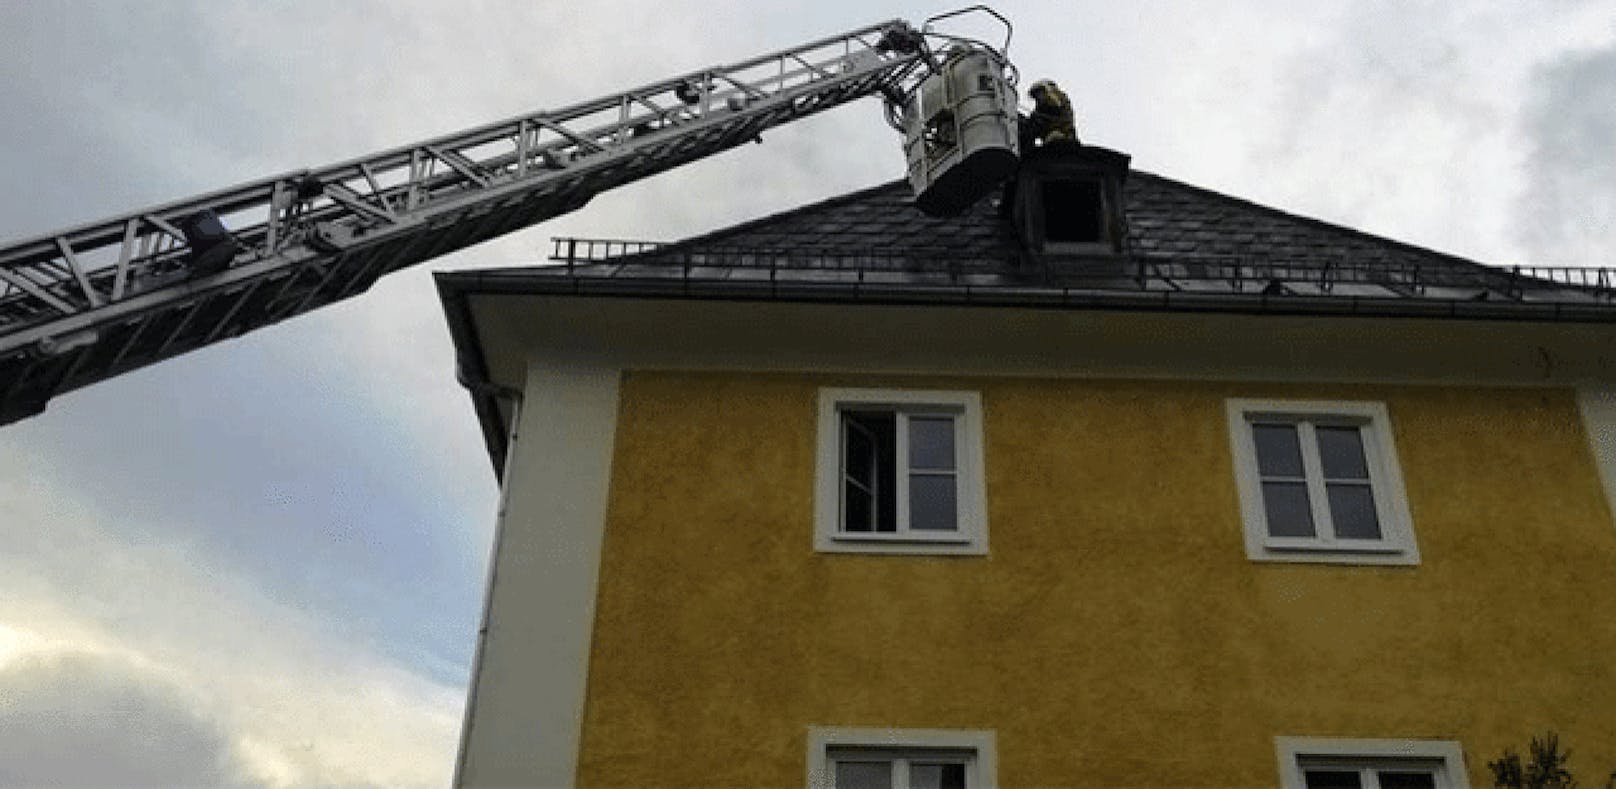 Nach Rauswurf: Mann hockt nackt auf Hausdach